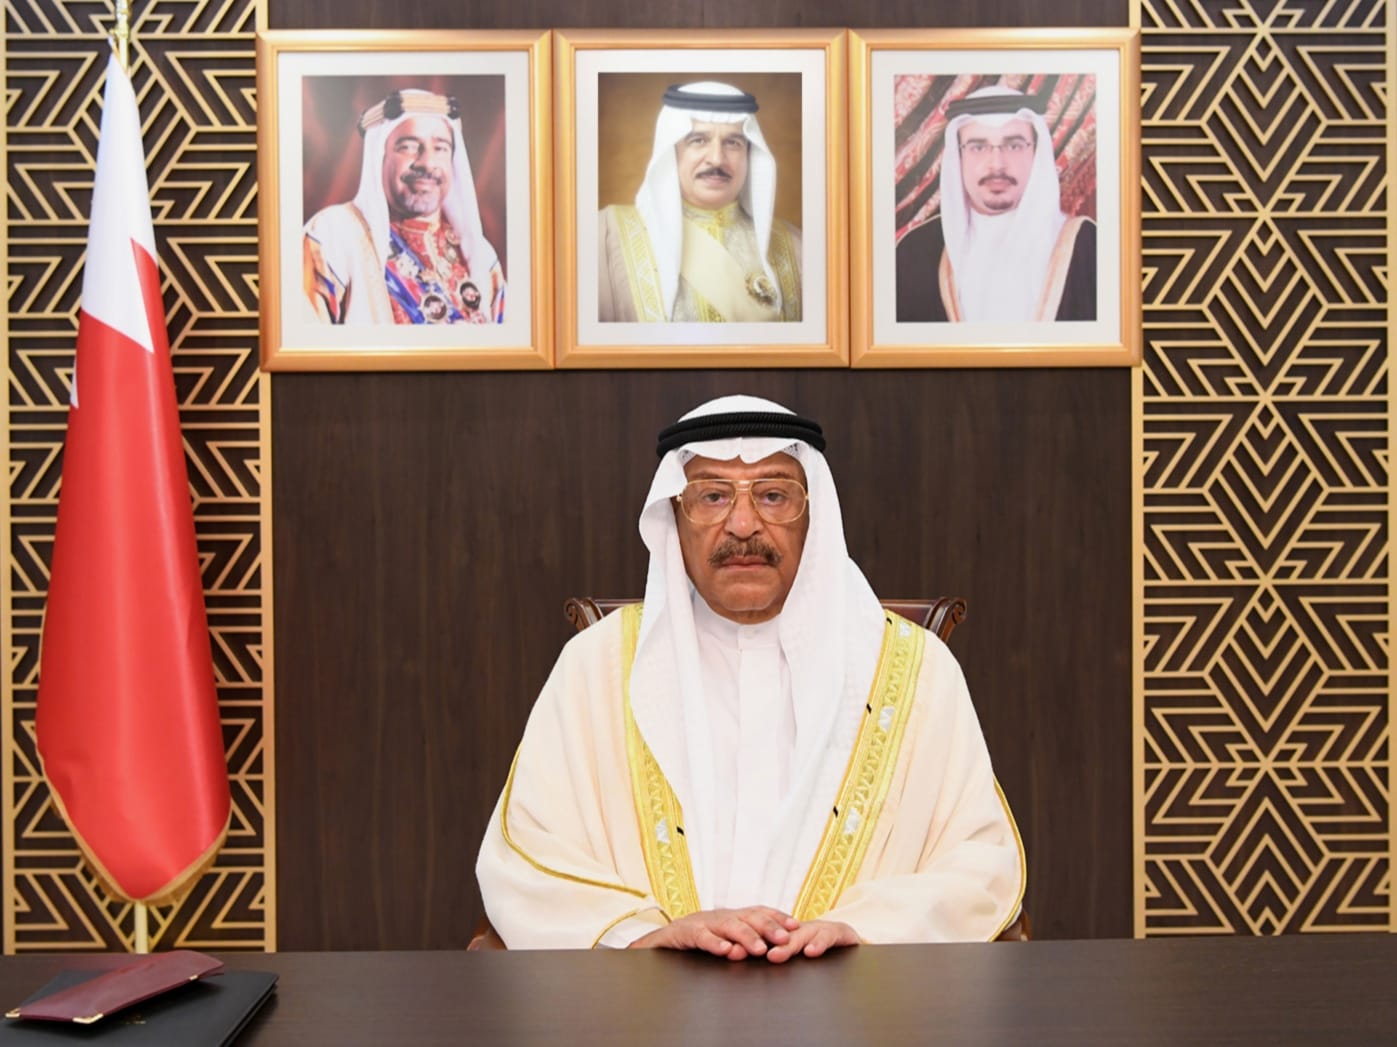  رئيس (الشورى البحريني): الحزمة المالية الاستثنائية شكّلت صمام أمان لاستقرار الاقتصاد والحد من تأثيرات "كورونا"